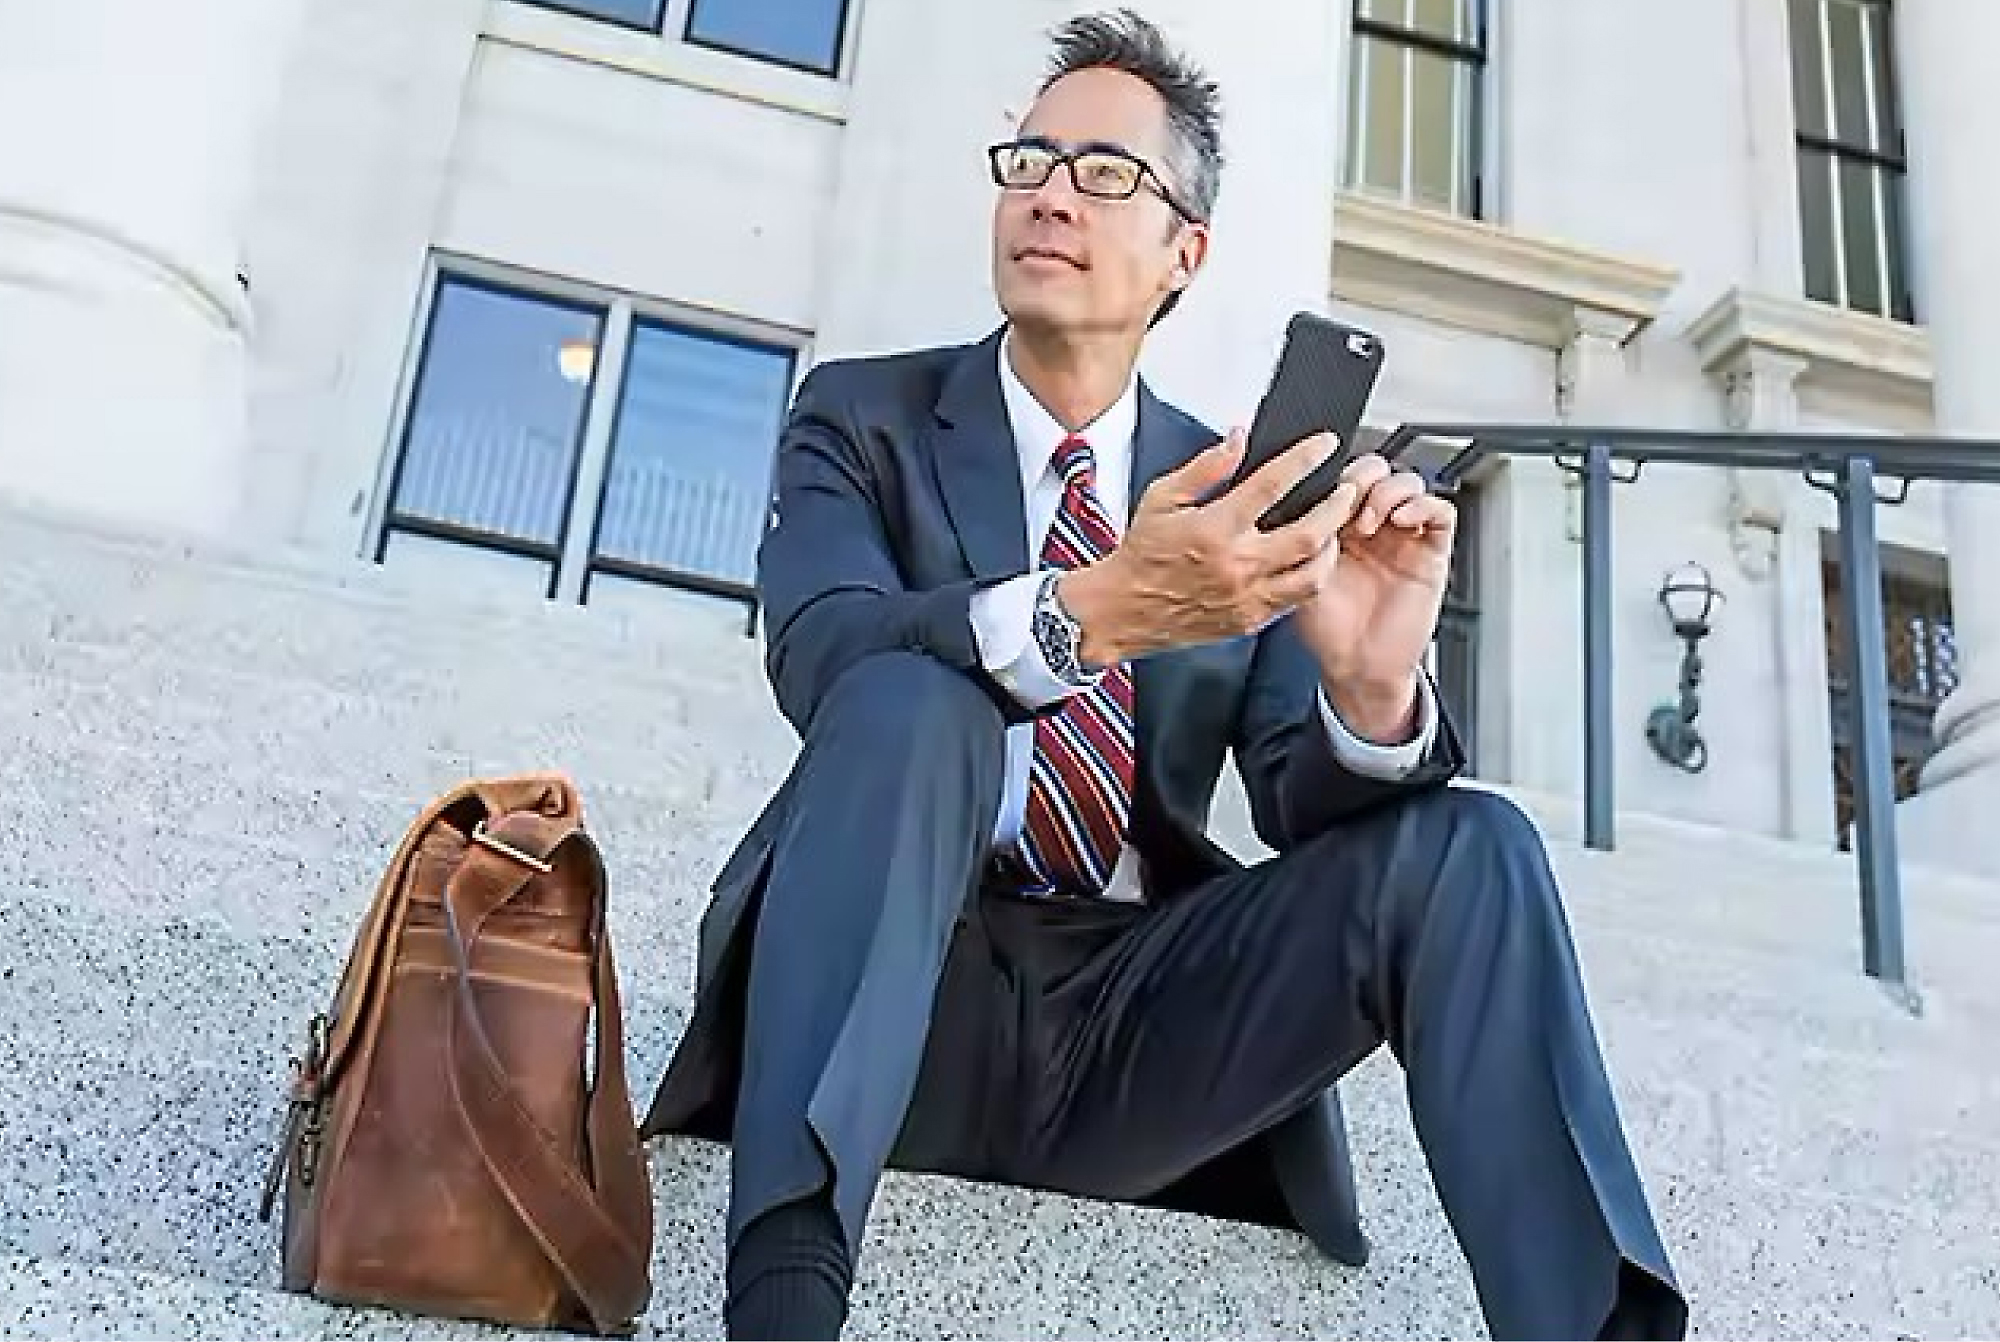 Бизнесмен в костюме и очках сидит на ступеньках возле здания, пользуясь смартфоном, а рядом с ним лежит кожаная сумка.